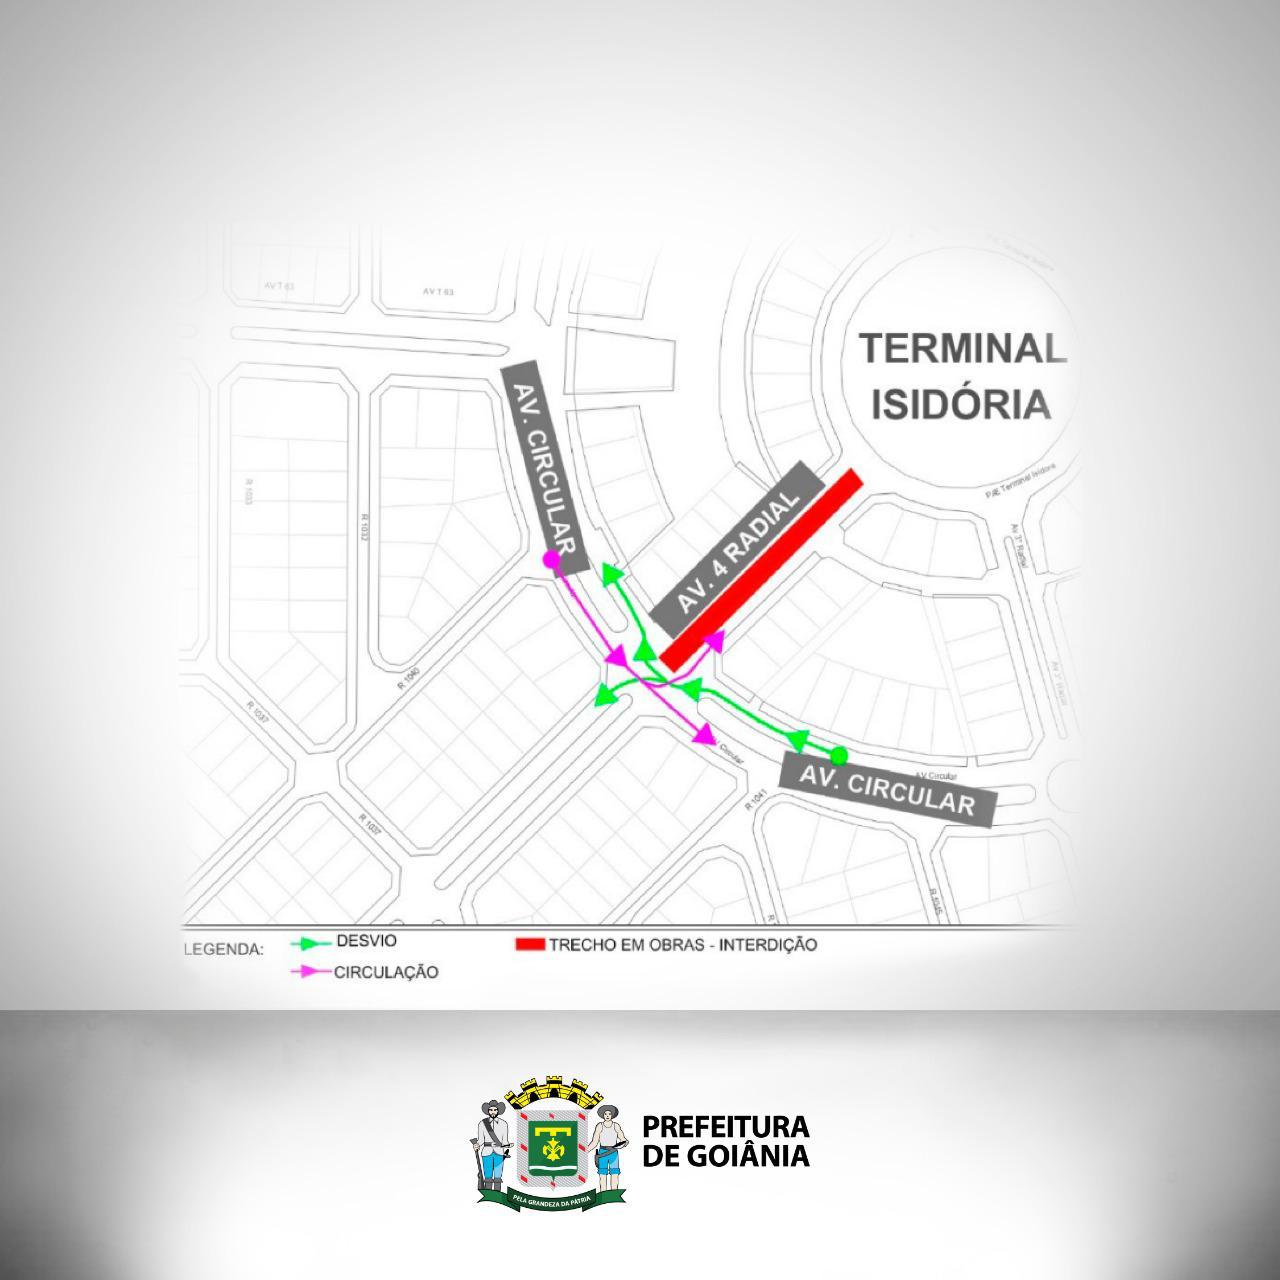 Cruzamento da Avenida Circular com a Avenida 4ª Radial, no Setor Pedro Ludovico, no sentido bairro/centro, terá circulação em pista simples(Reprodução)